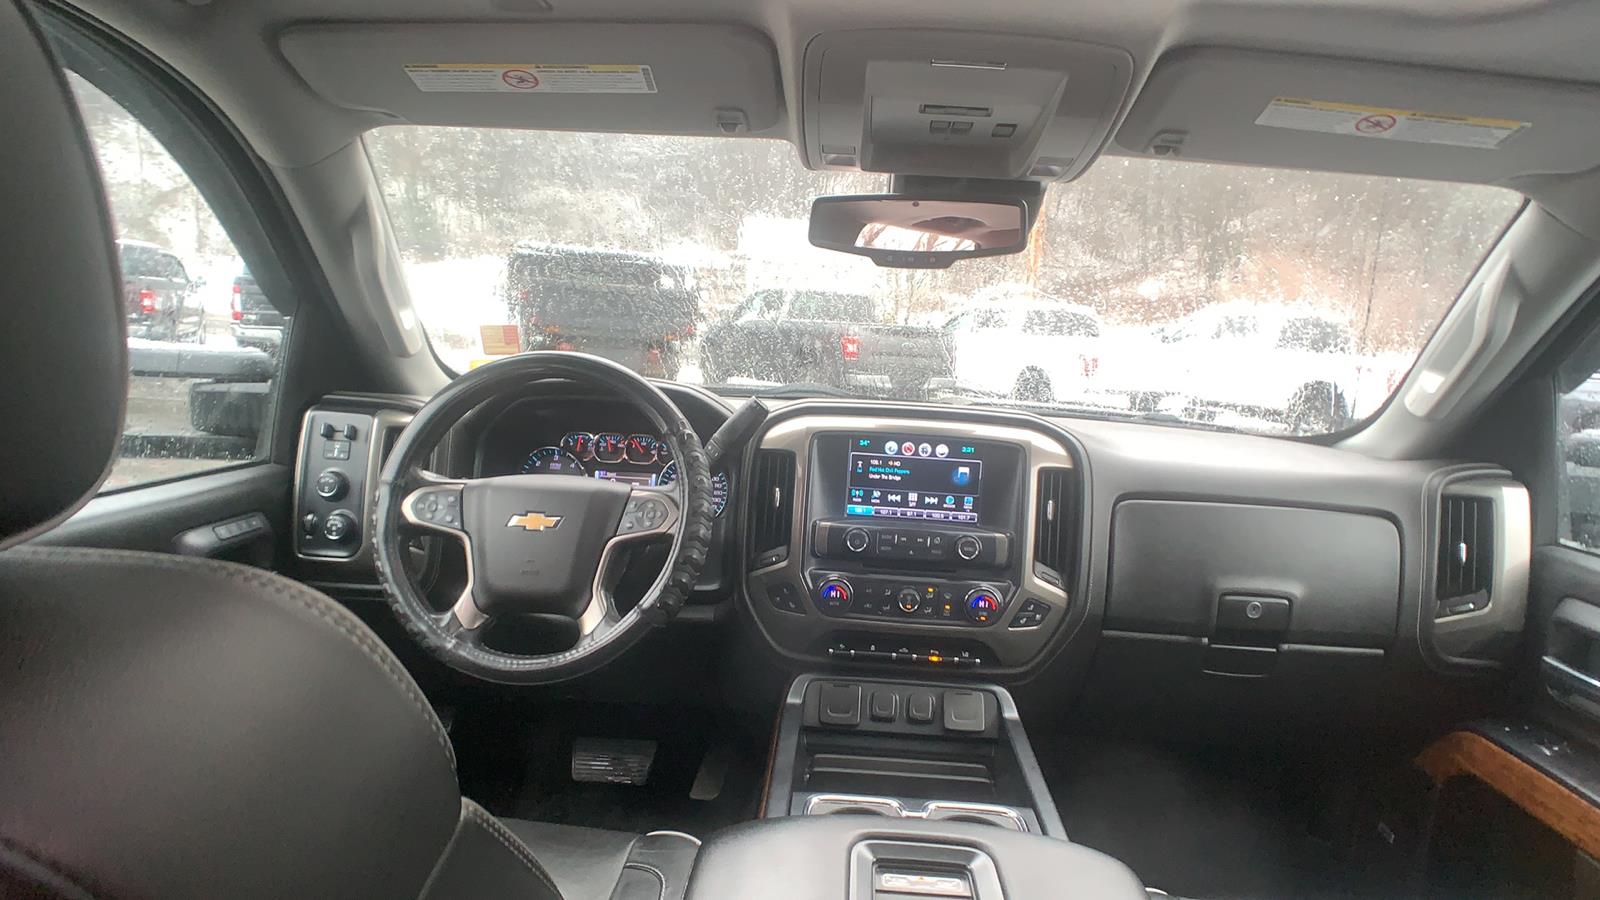 2017 Chevrolet Silverado 3500HD Standard Bed,Crew Cab Pickup